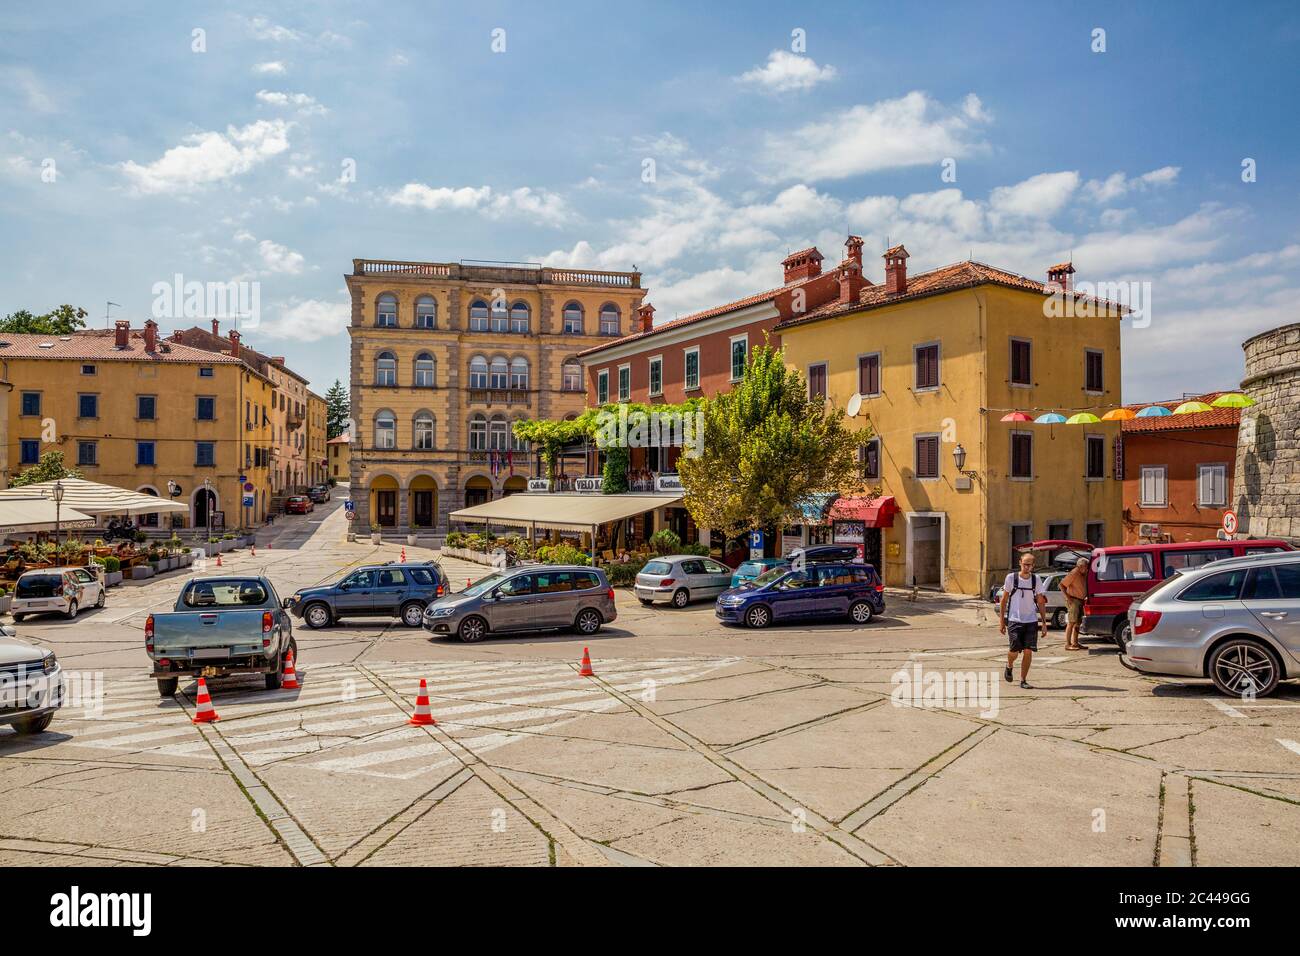 Croatia, Istria, Labin, Old town square Stock Photo